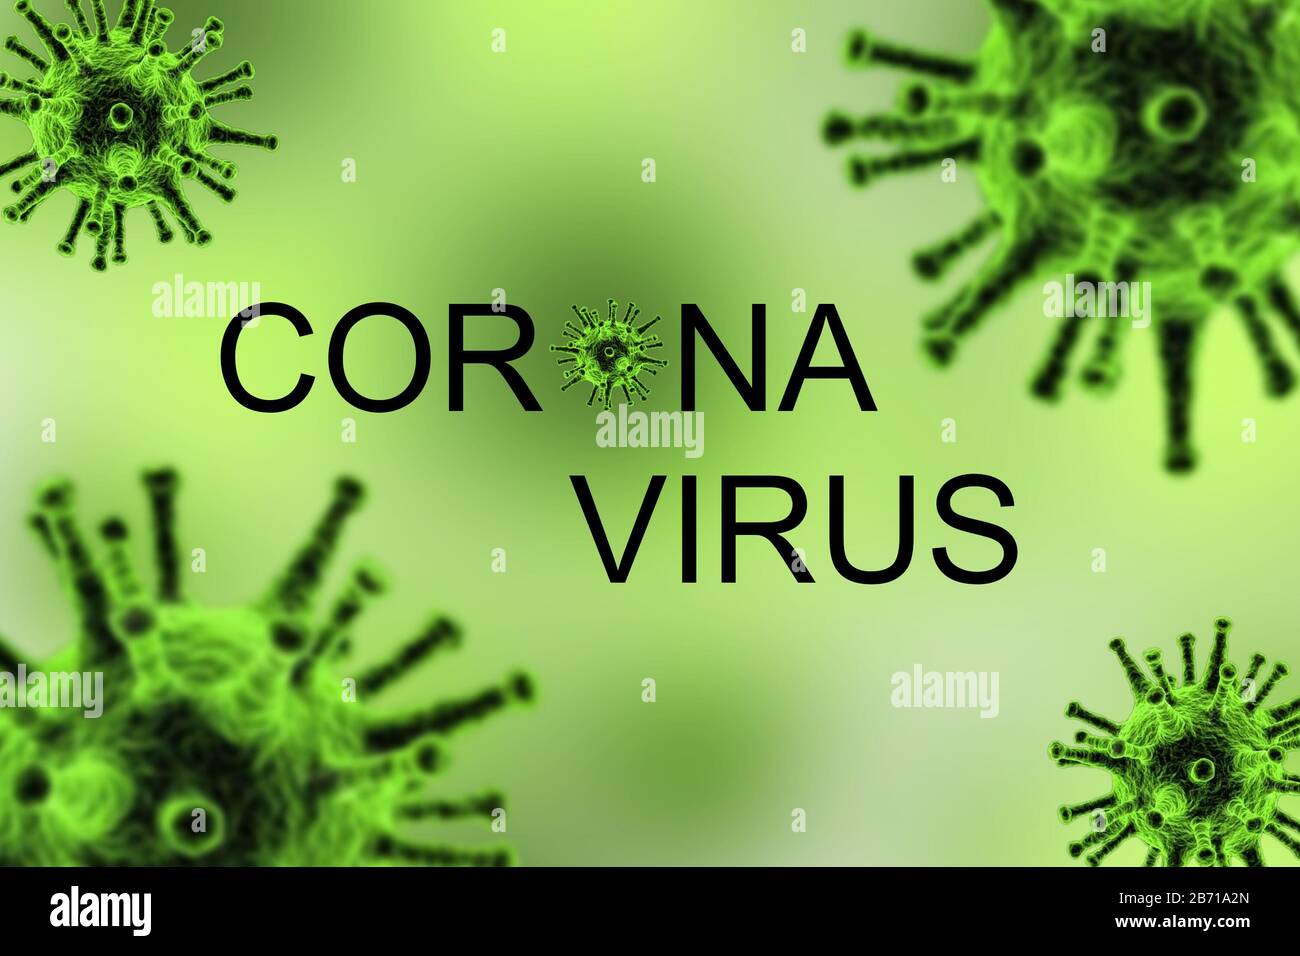 Corona virus ataque concepto, muchos virus ataque sobre fondo verde Foto de stock